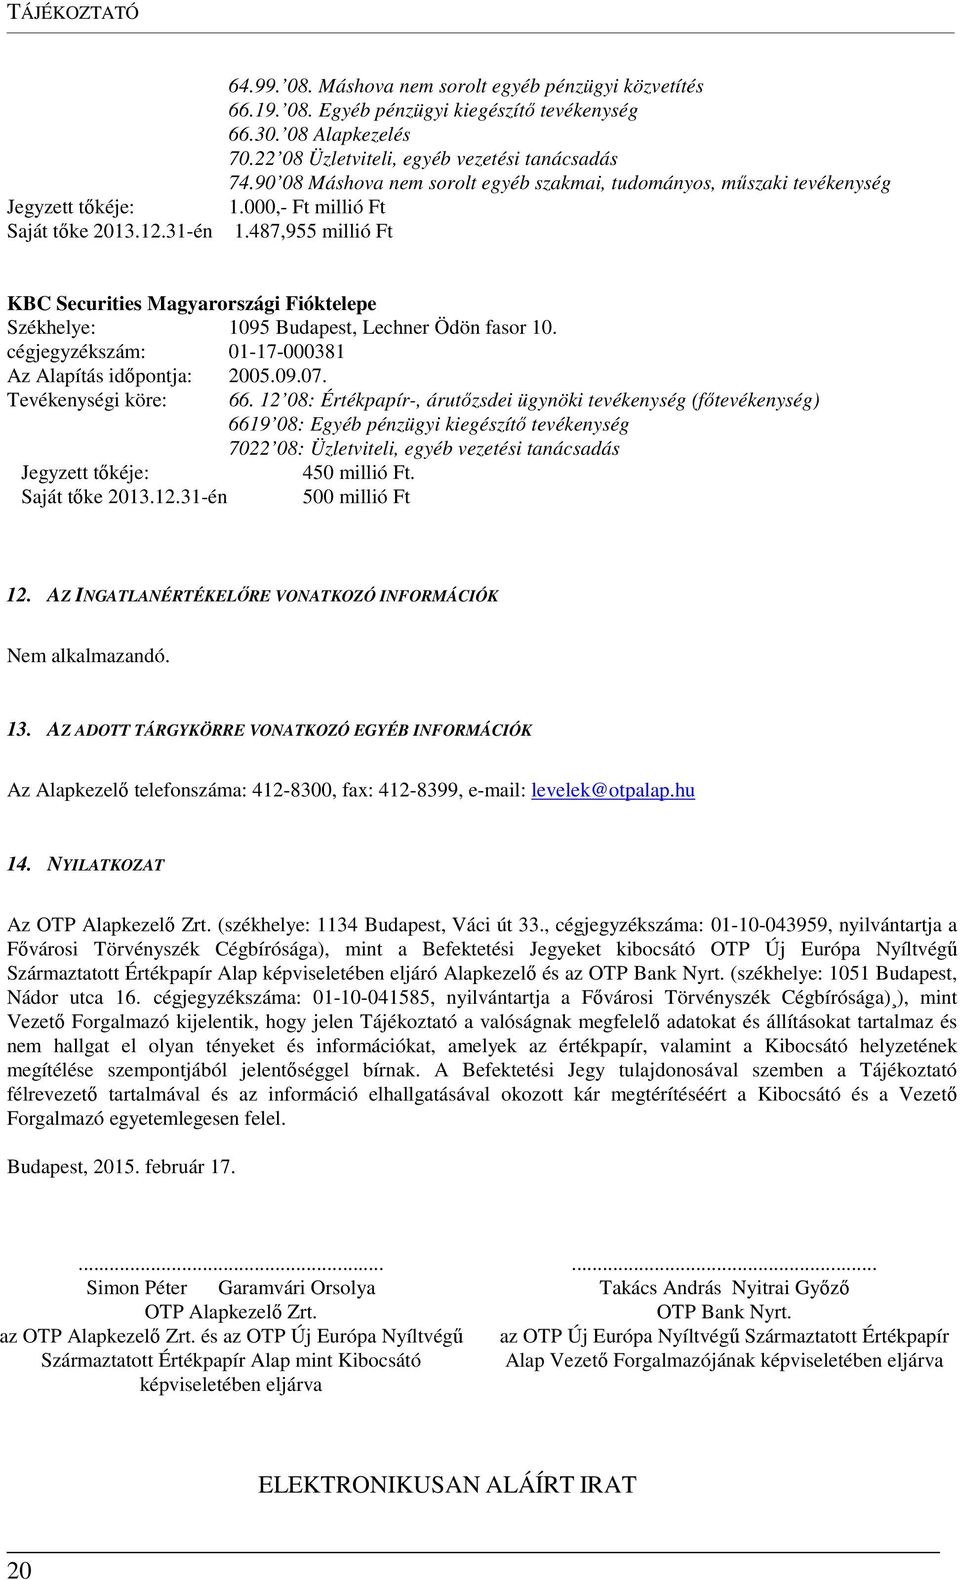 487,955 millió Ft KBC Securities Magyarországi Fióktelepe Székhelye: 1095 Budapest, Lechner Ödön fasor 10. cégjegyzékszám: 01-17-000381 Az Alapítás időpontja: 2005.09.07. Tevékenységi köre: 66.